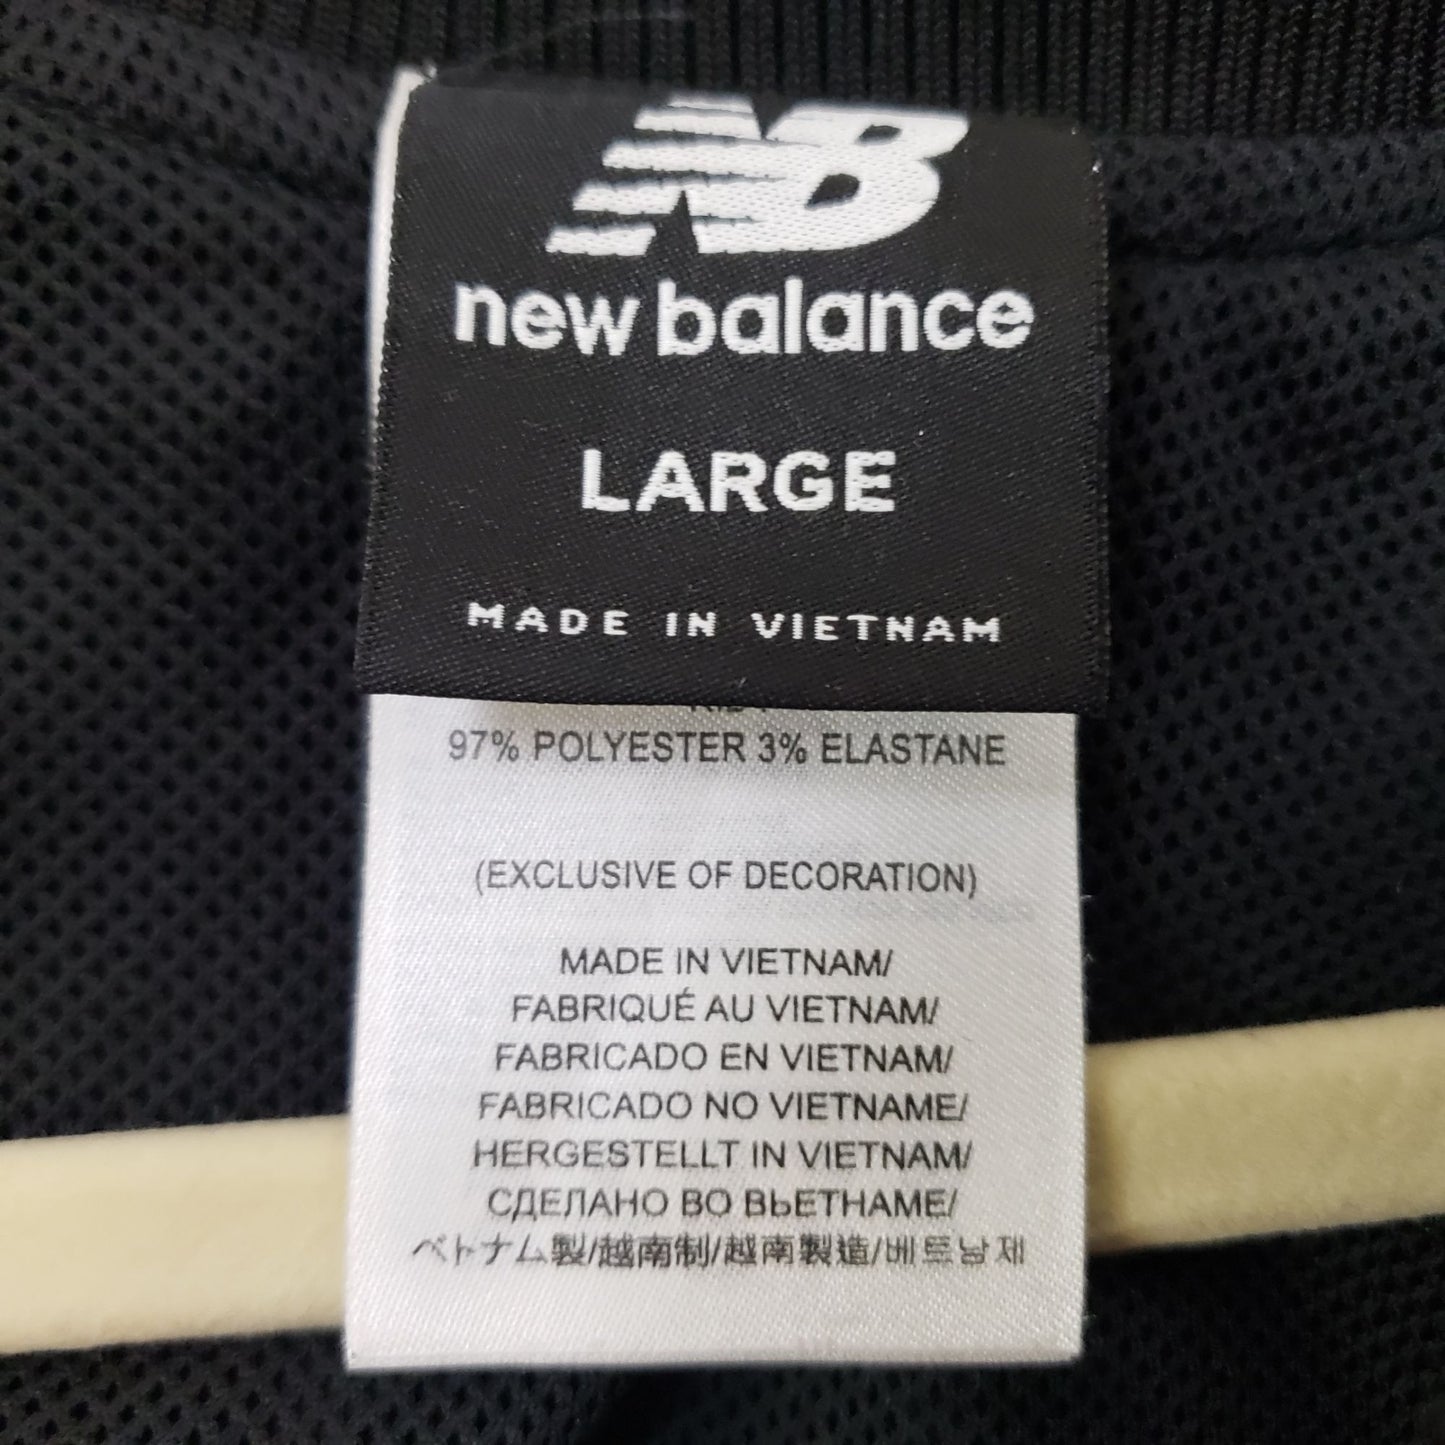 New Balance Mixed Print Windbreaker Jacket Size Large